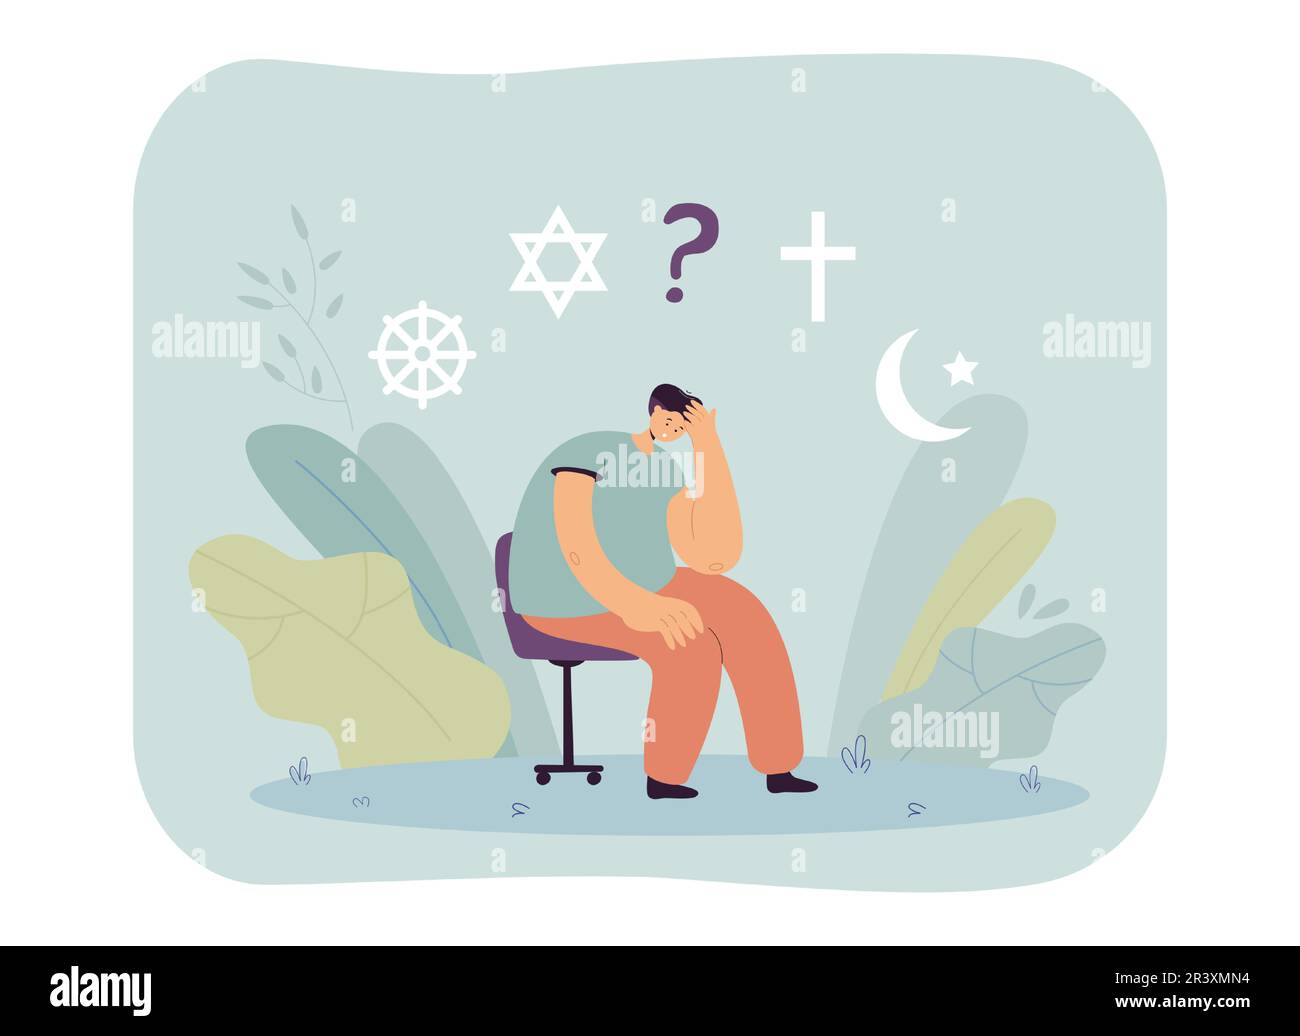 Cartoon man choosing religion flat vector illustration Stock Vector